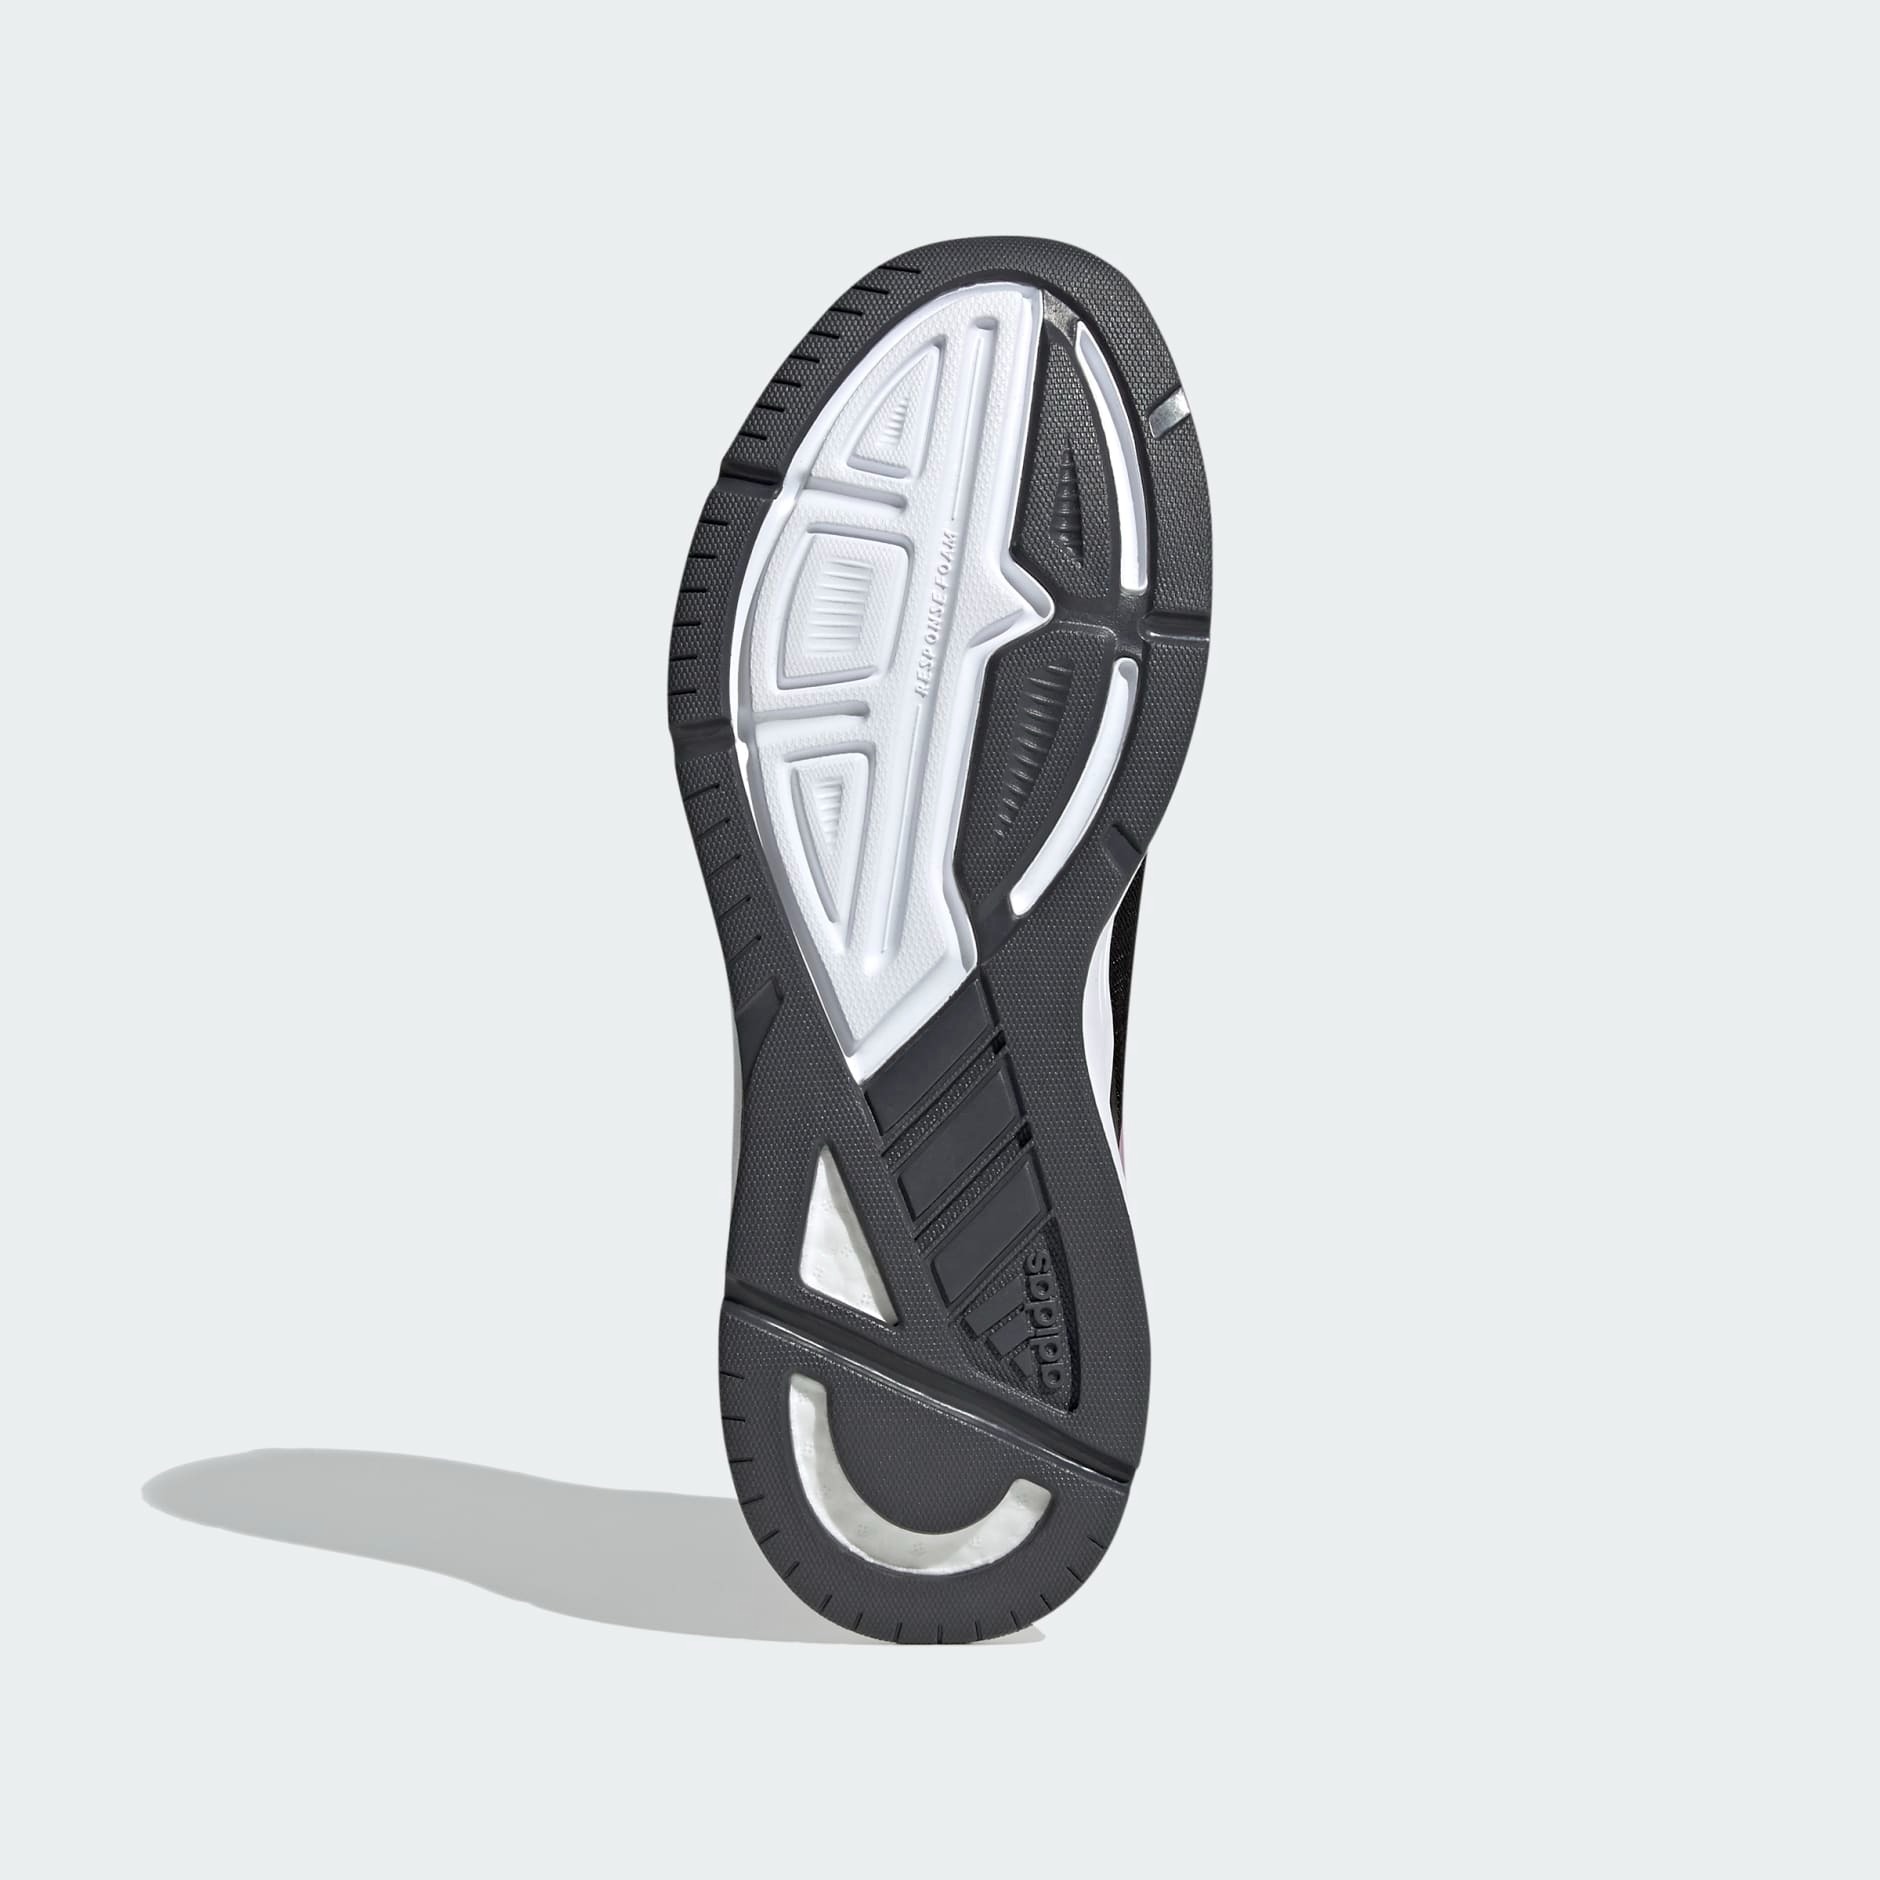 Giày sneaker thể thao chạy bộ - H02022 Quyetsneaker